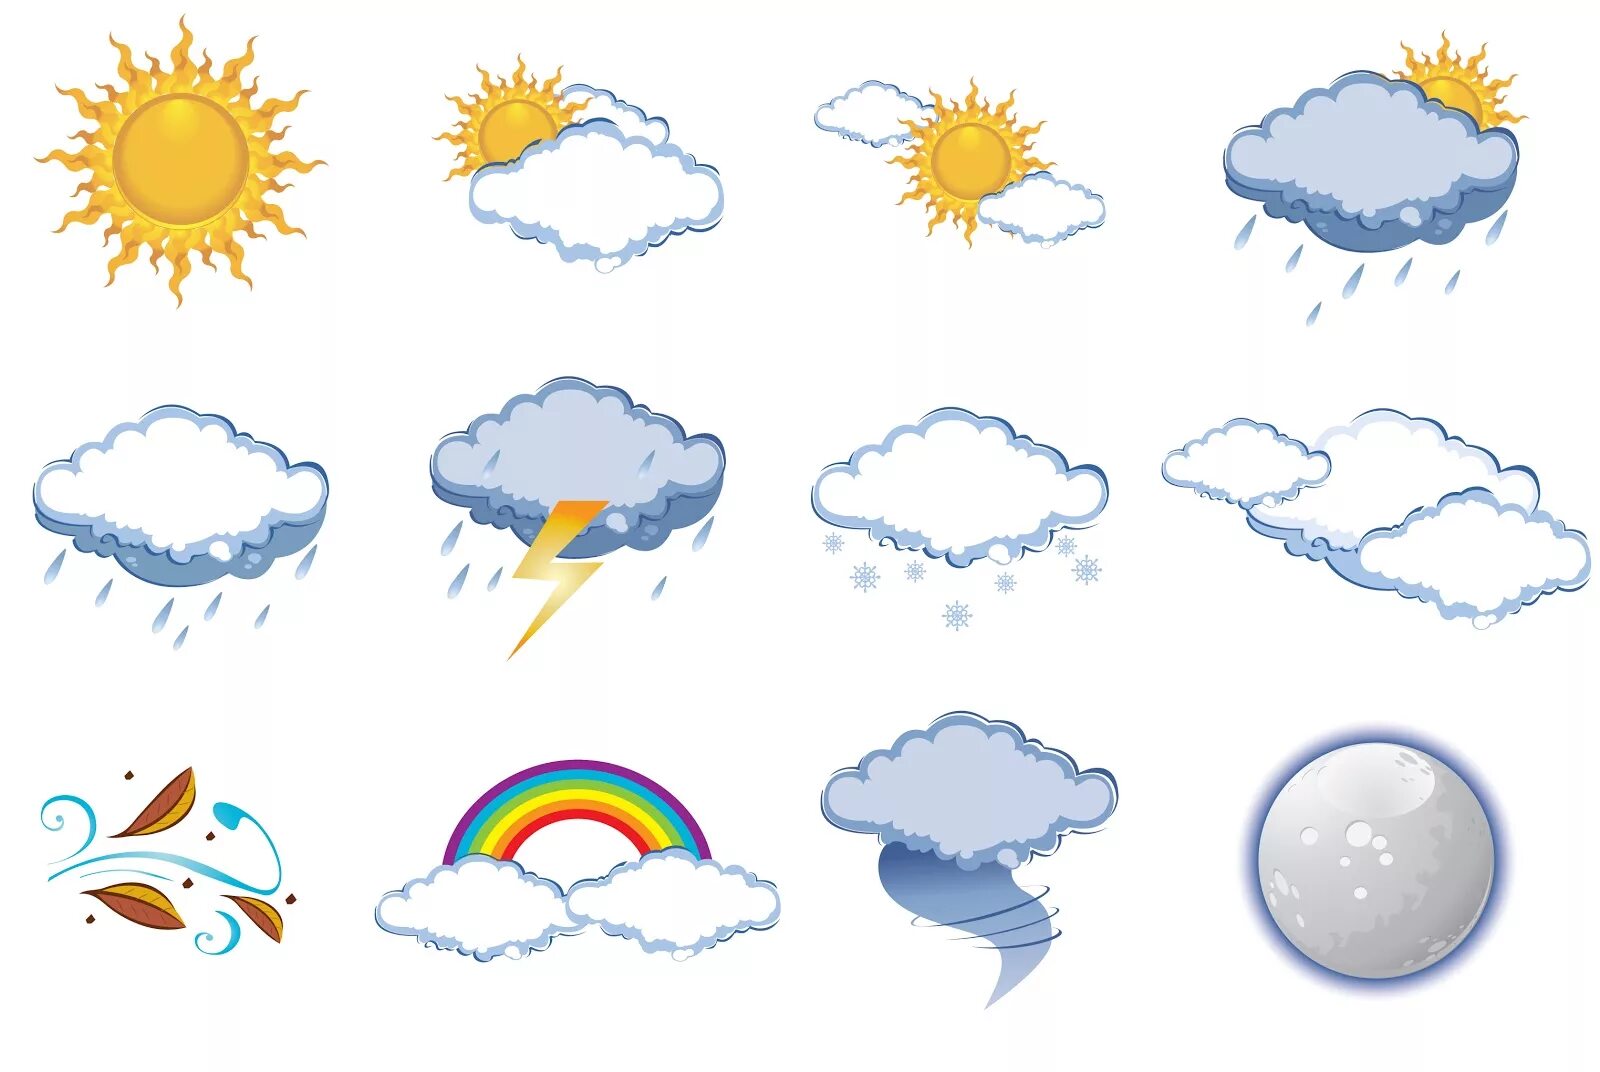 Погода сегодня знак. Погодные явления картинки для детей. Погода на английском языке. Gjujlf ZF fzukbqcrjv. Погода картинки на английском для детей.